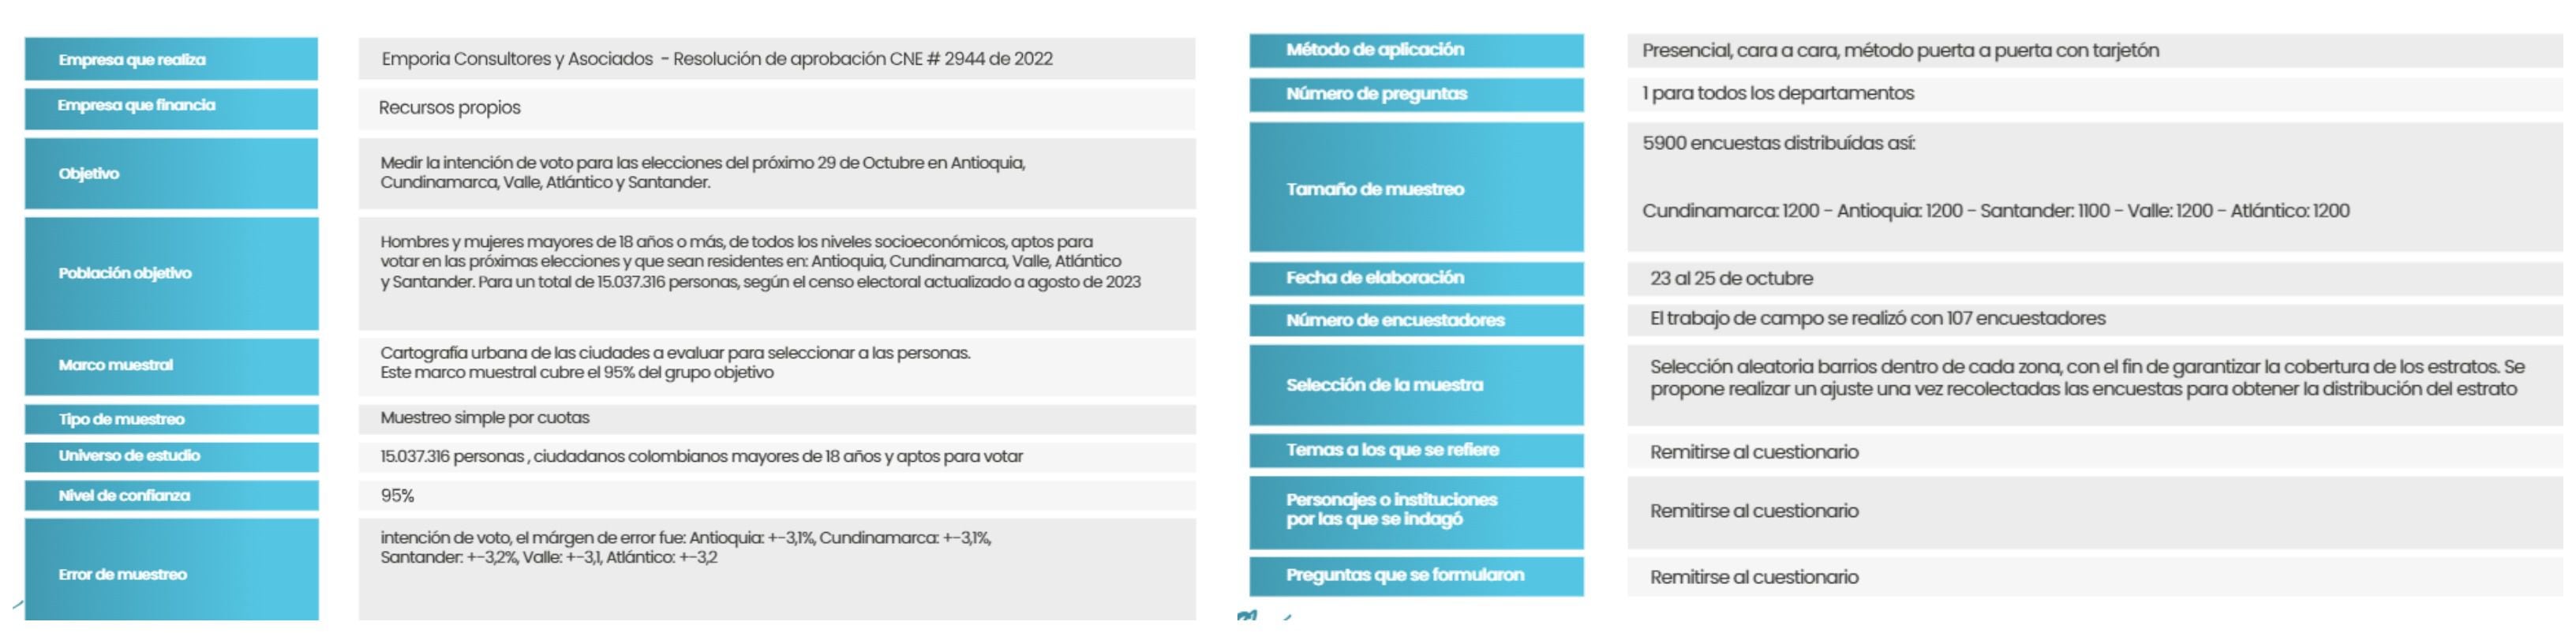 Ficha técnica de la encuesta para las gobernaciones de Cundinamarca, Antioquia, Atlántico, Santander y Valle del Cauca - crédito Emporia